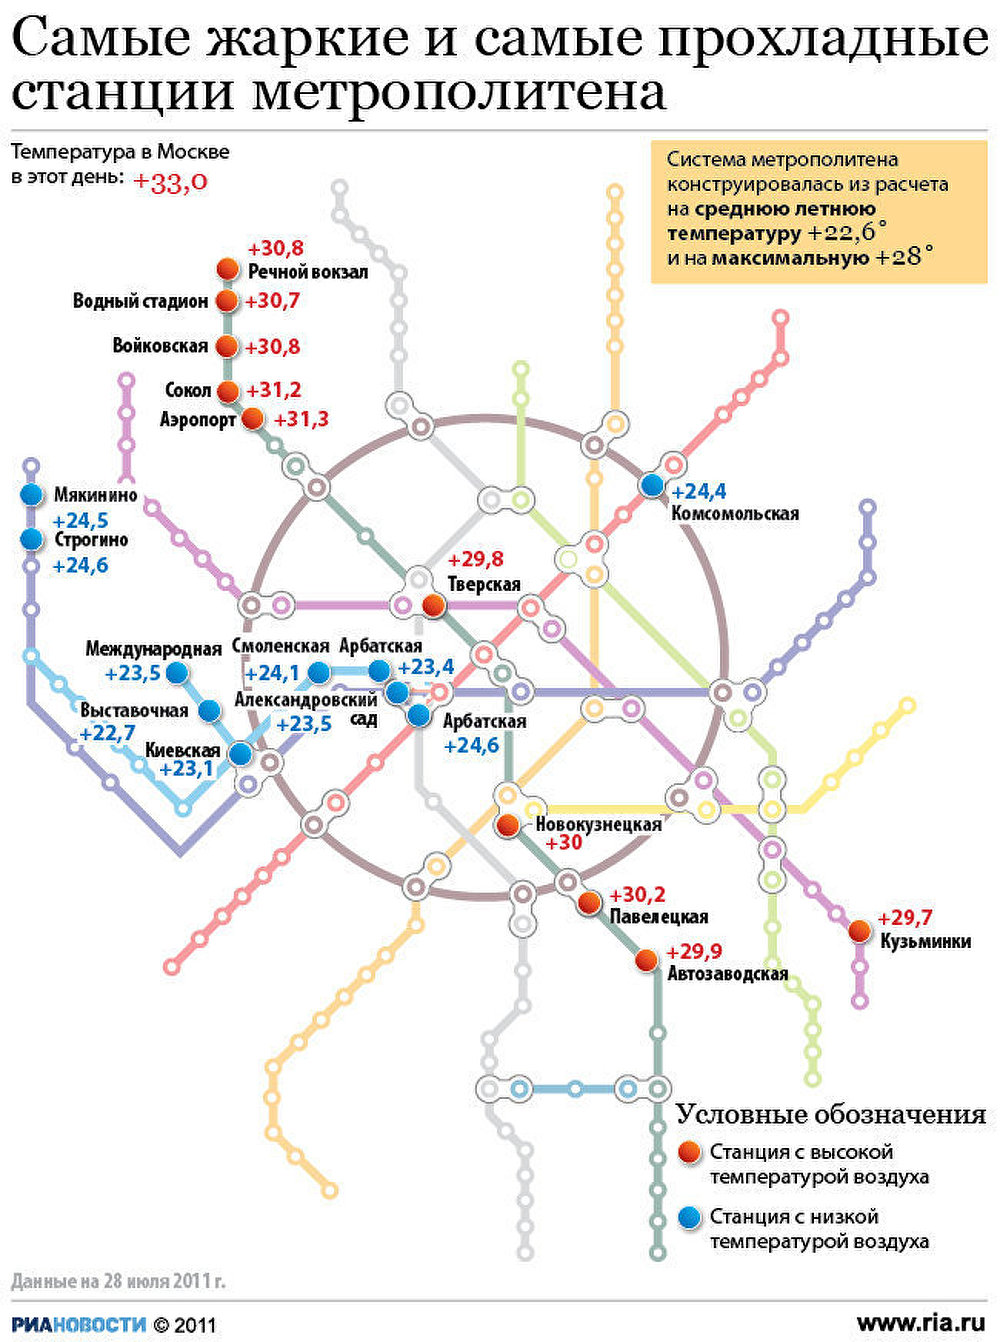 глубина метро в москве